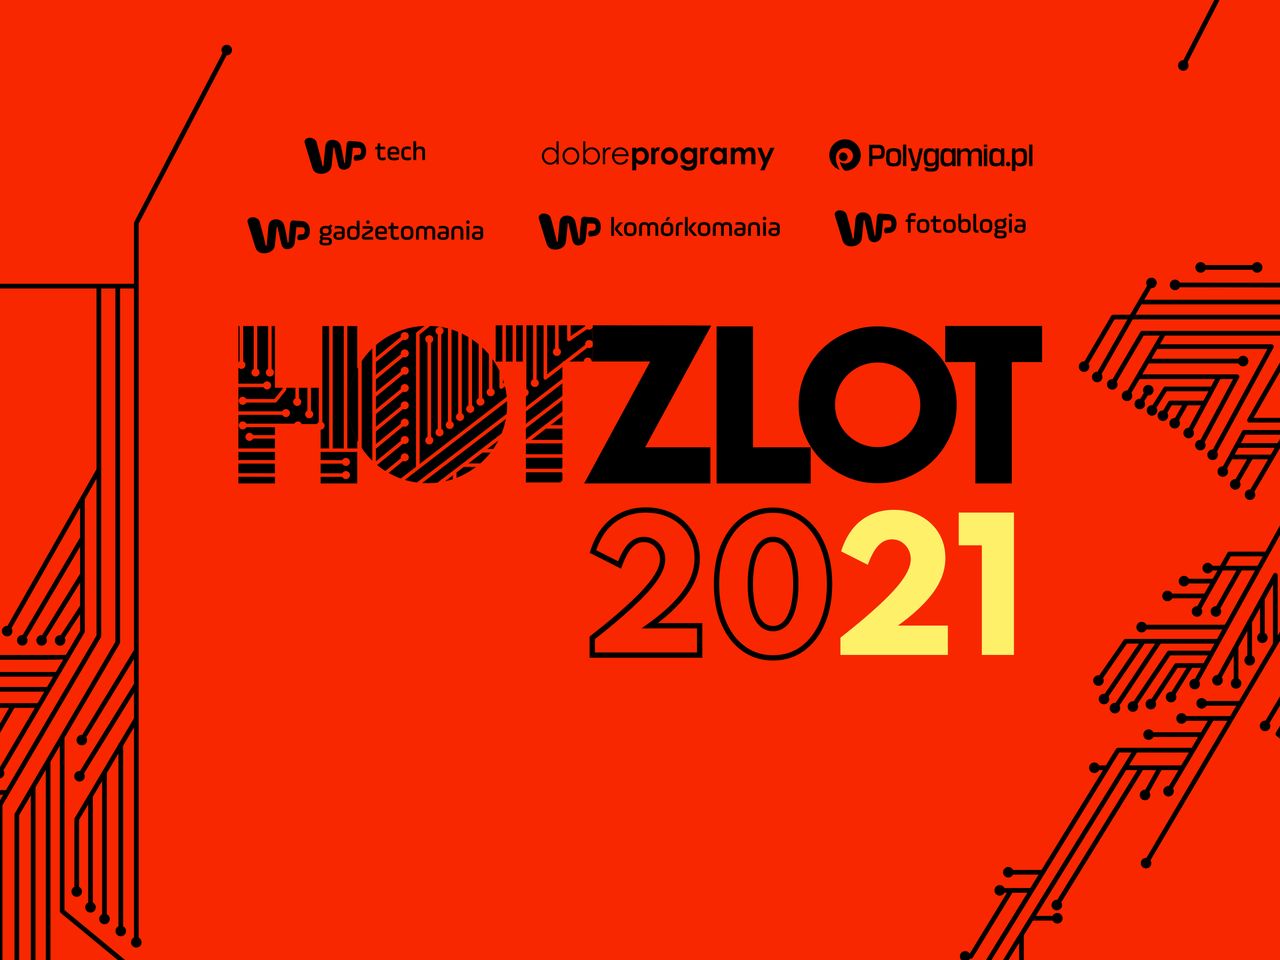 HotZlot 2021 już za kilka dni! Tym razem spotkamy się z Wami wirtualnie